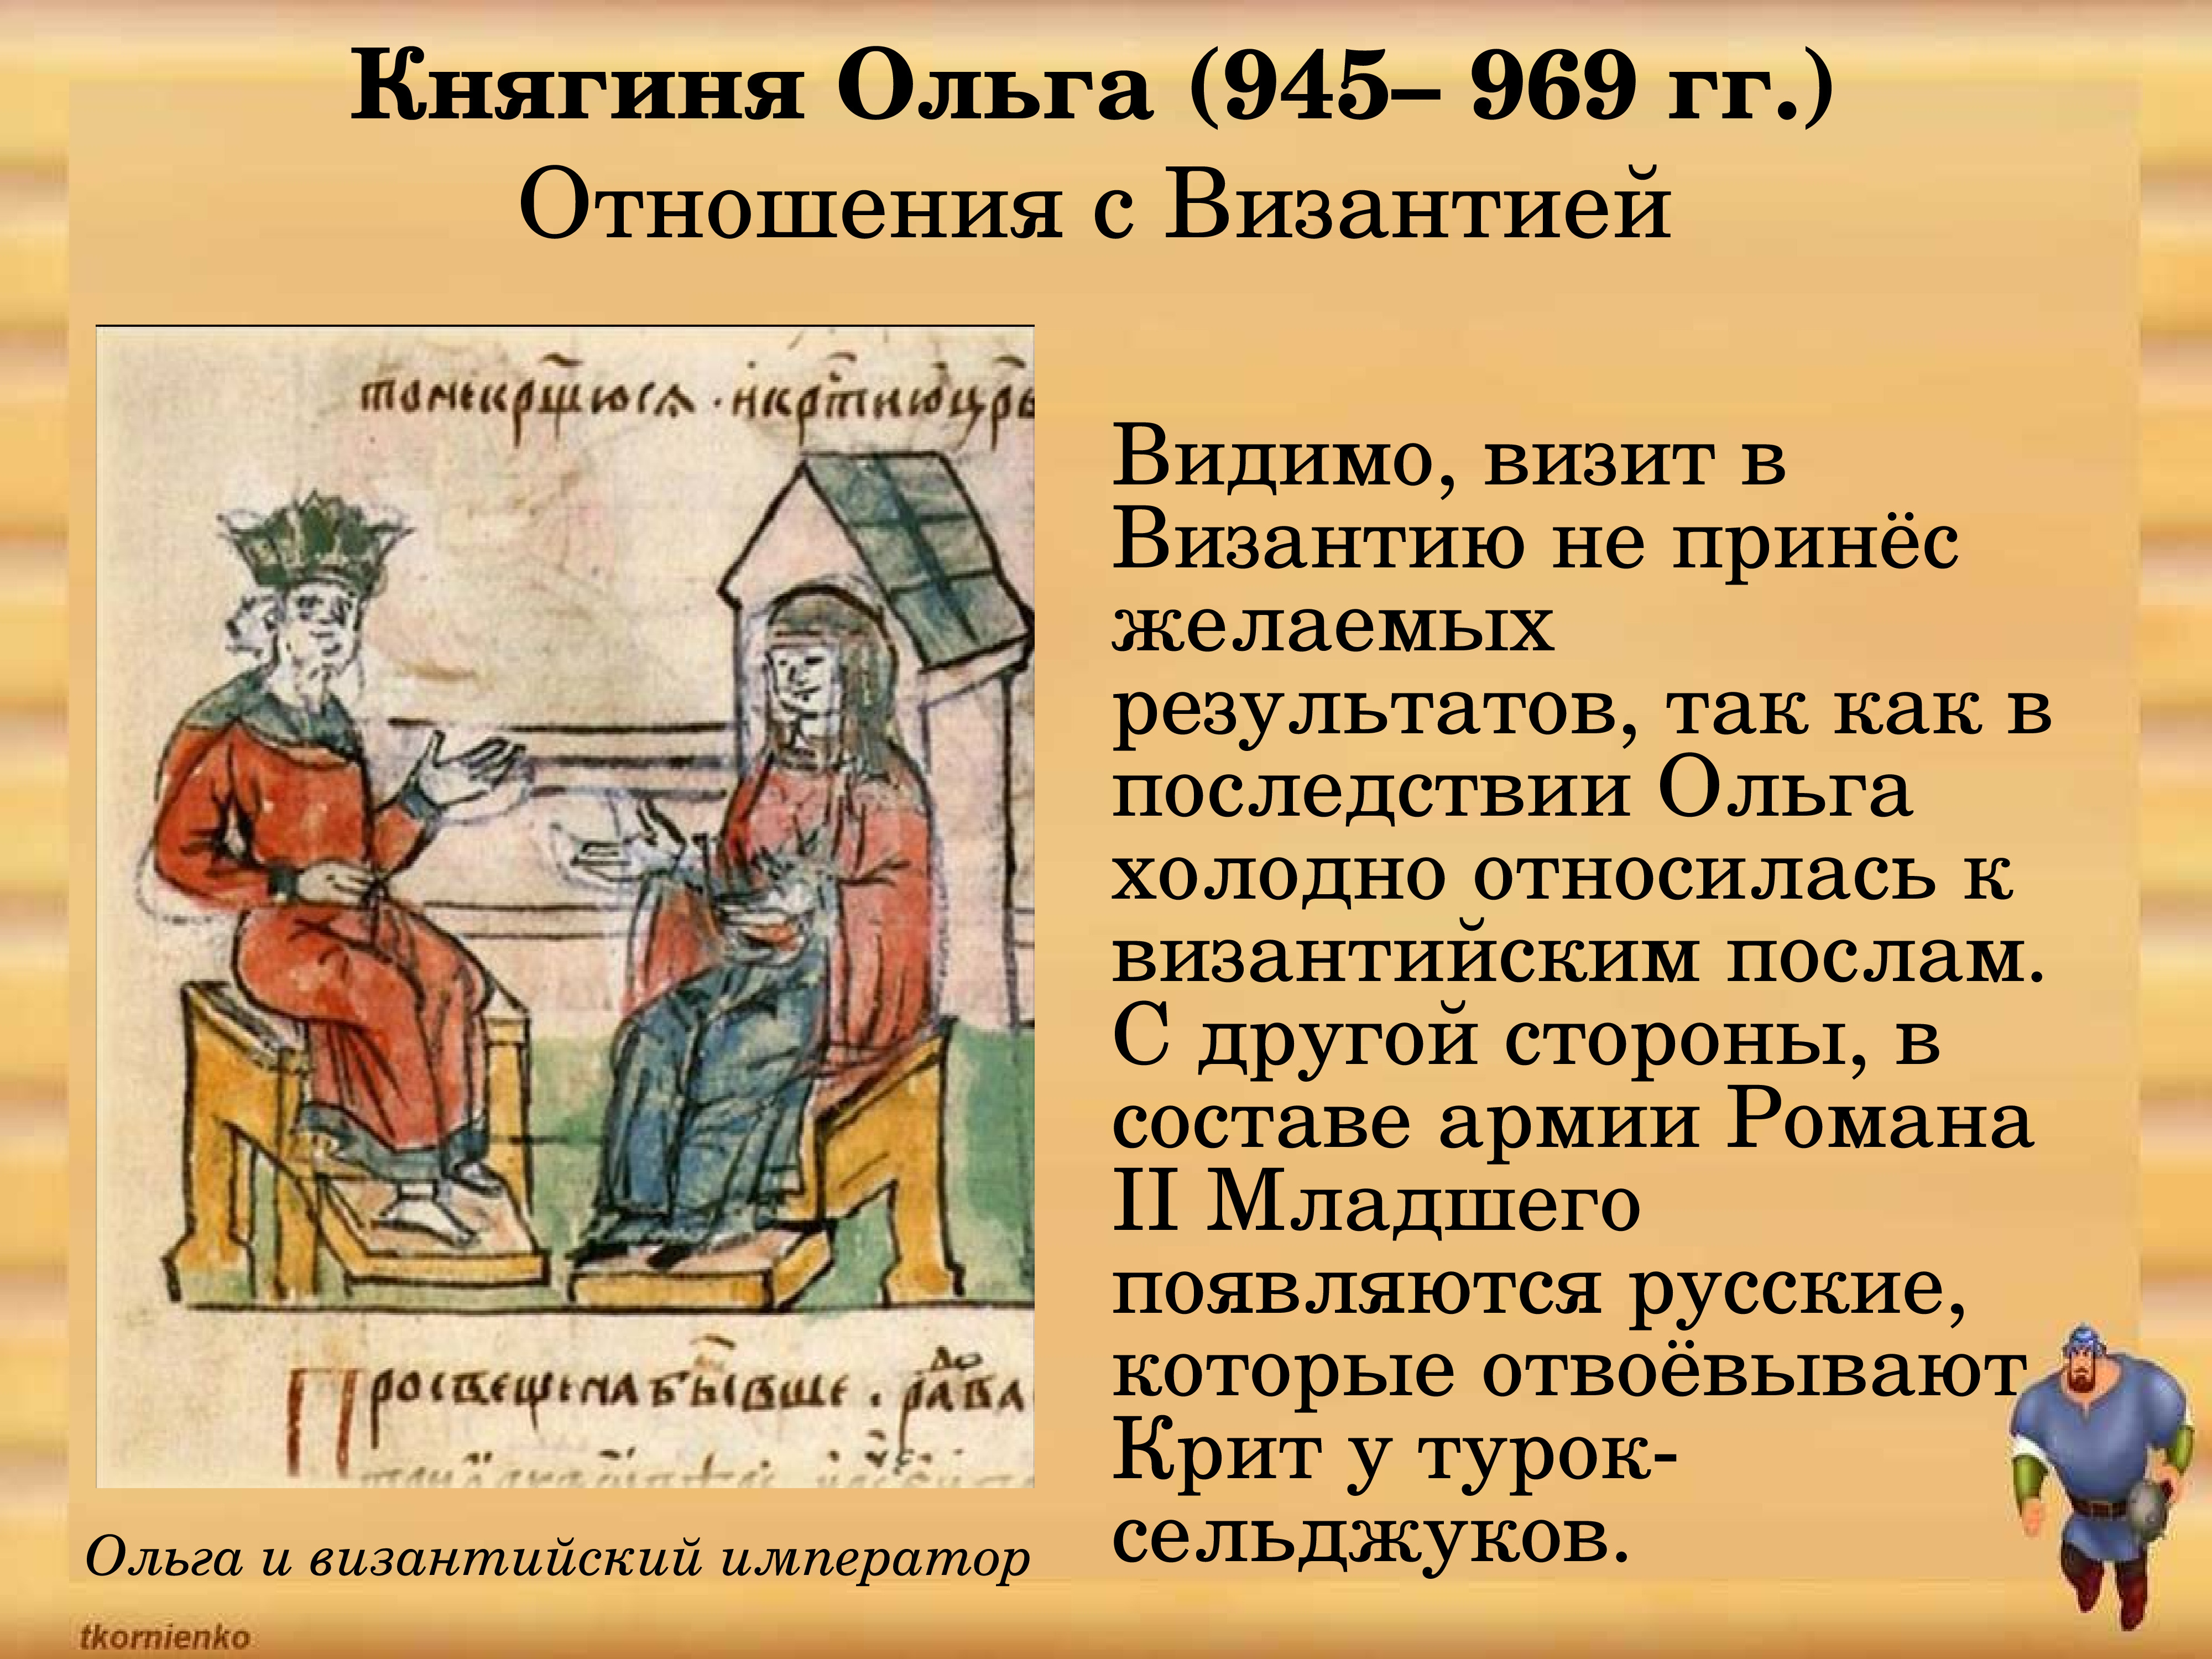 Договор Ольги с Византией